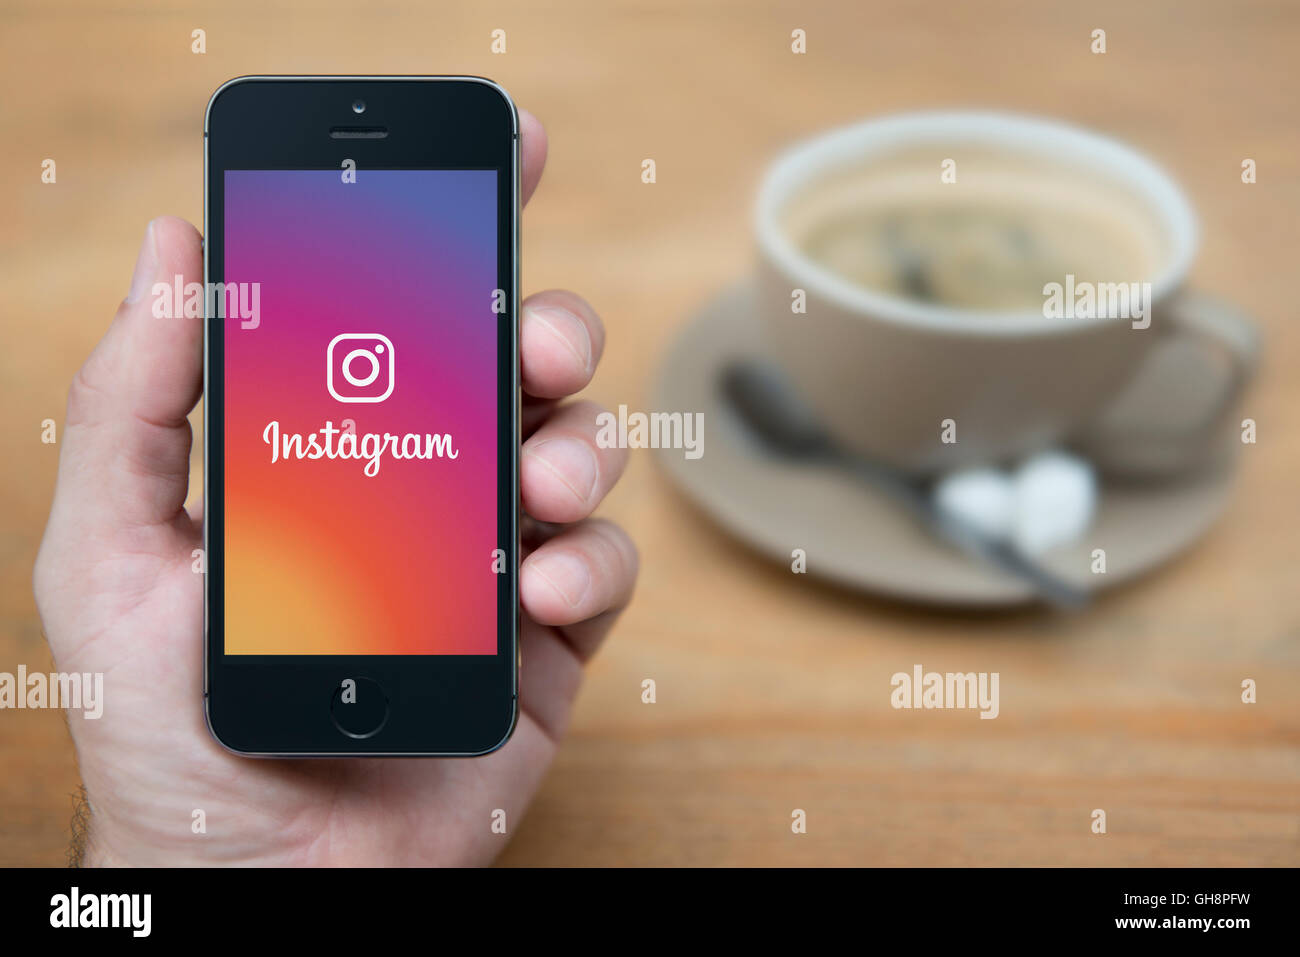 Un homme se penche sur son iPhone qui affiche le logo d'Instagram, tandis qu'assis avec une tasse de café (usage éditorial uniquement). Banque D'Images